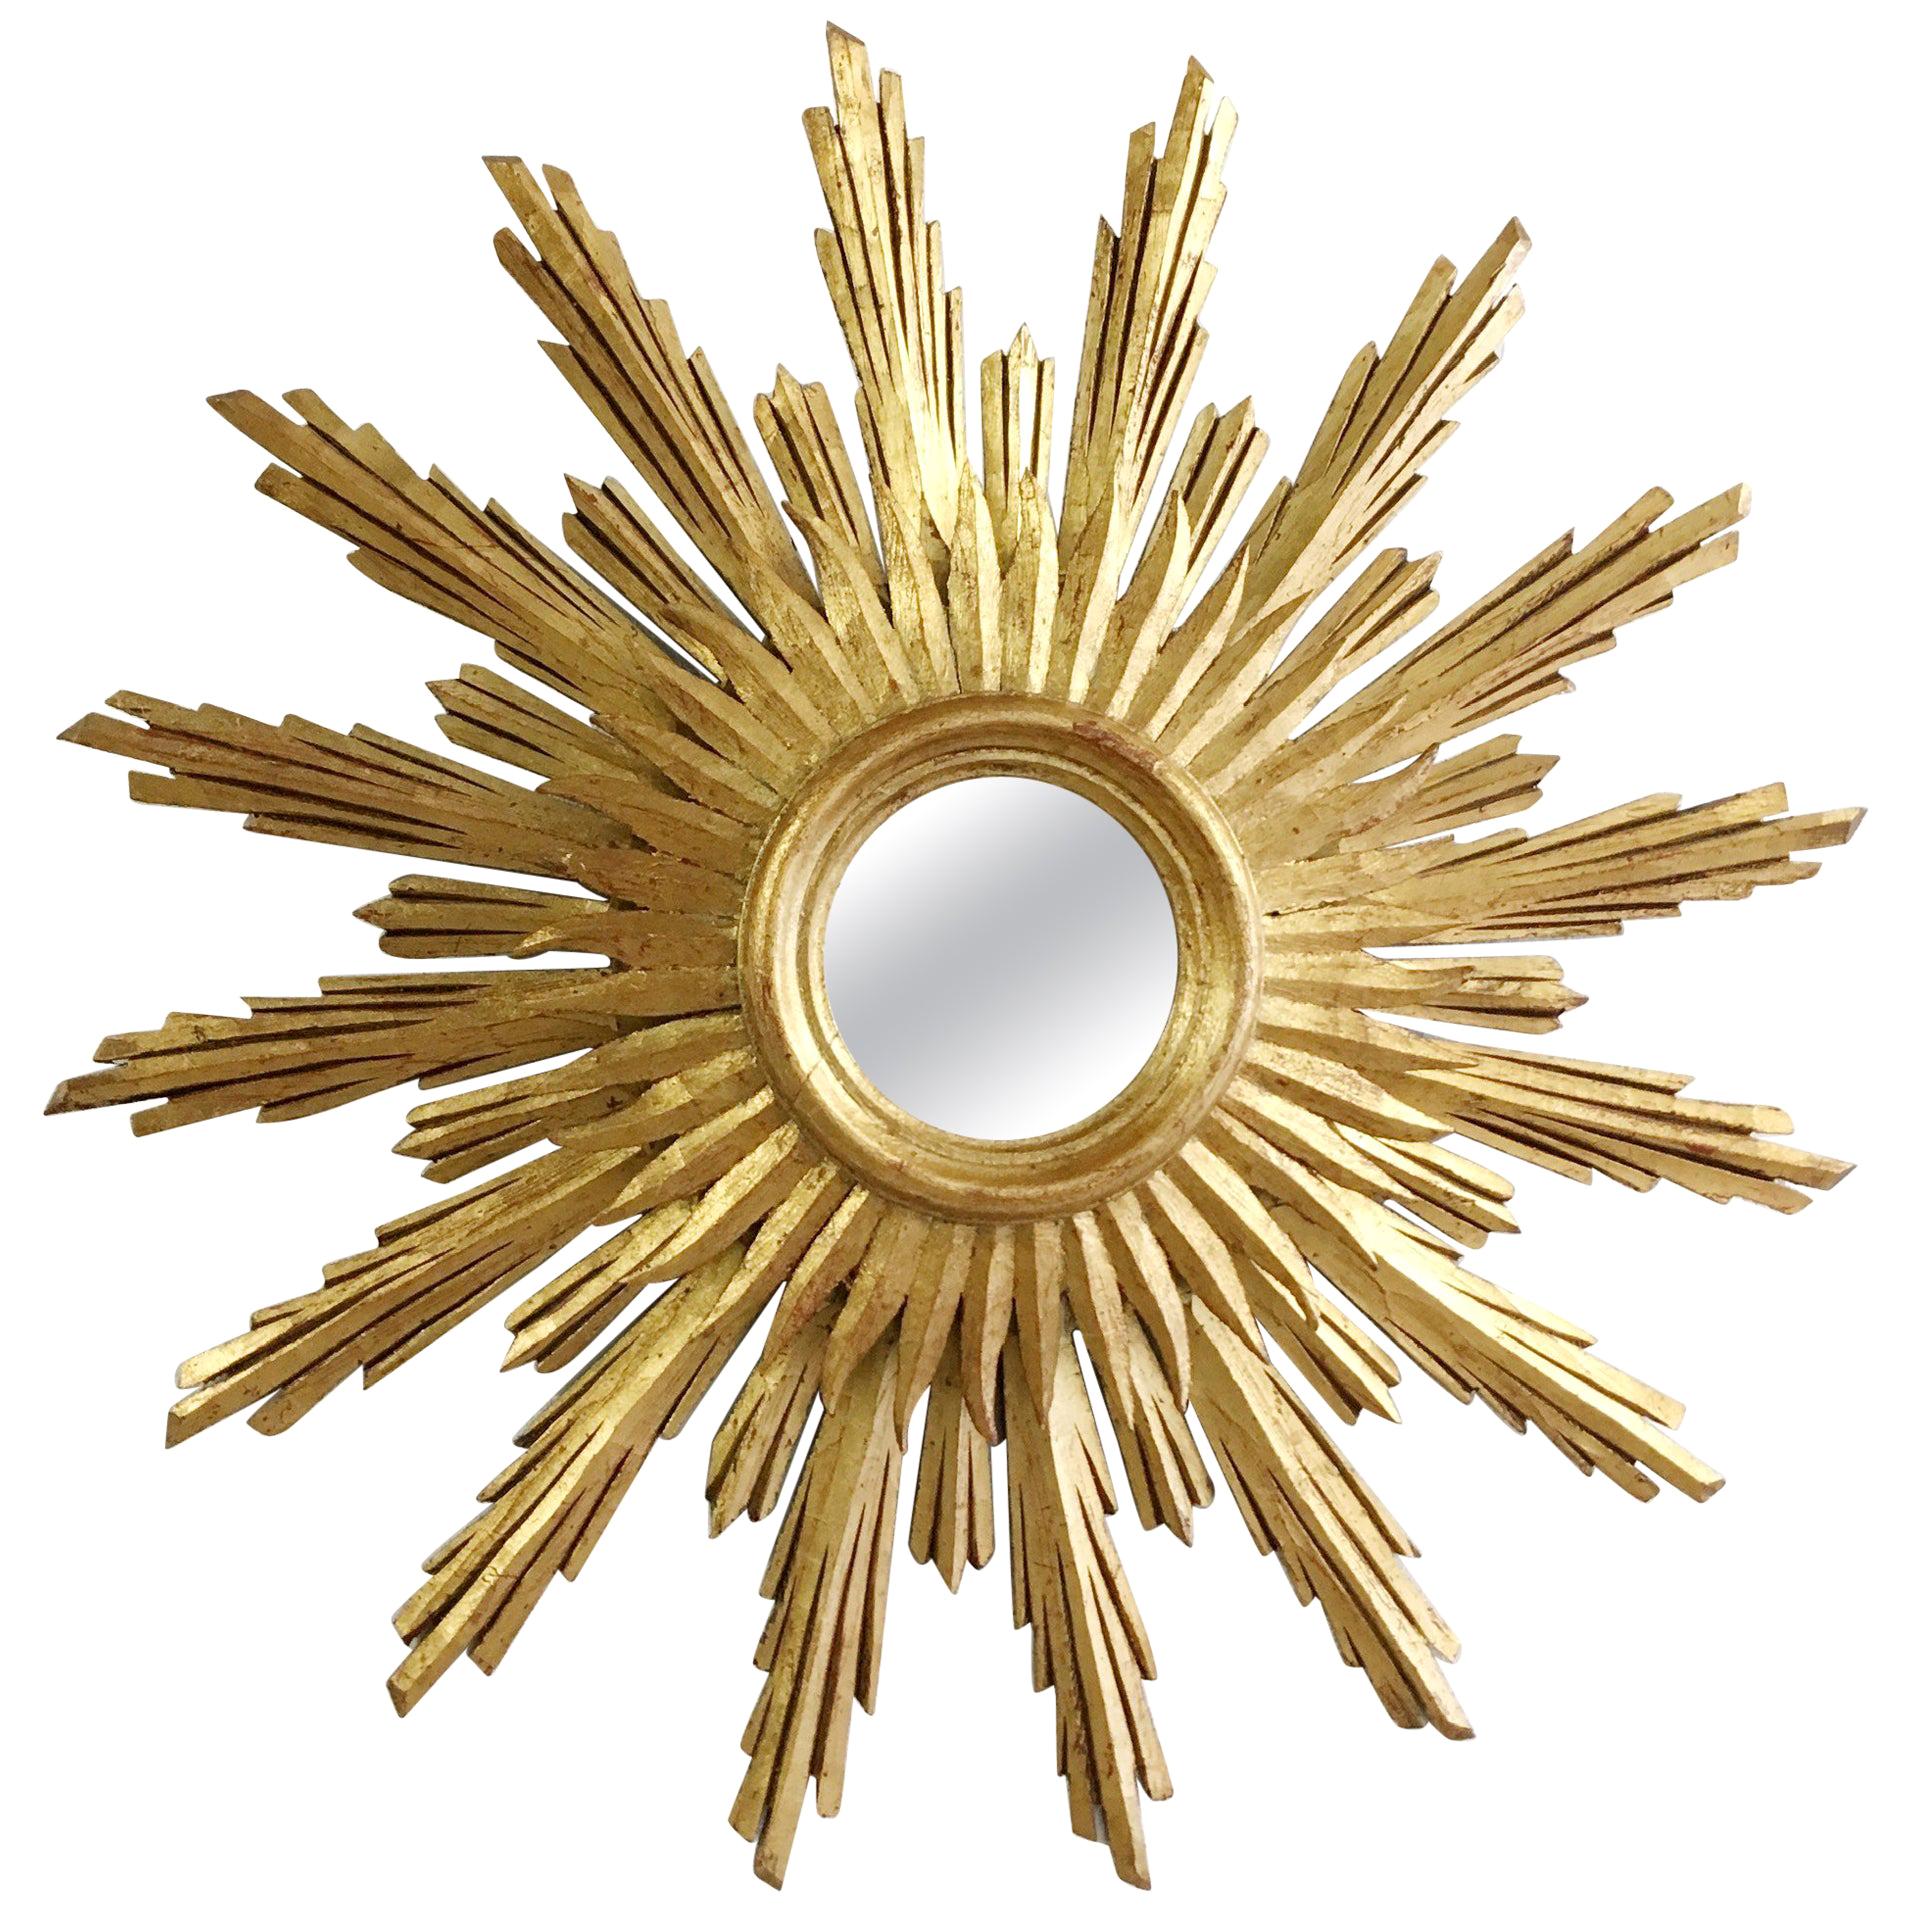 Midcentury French Wooden Sunburst Mirror